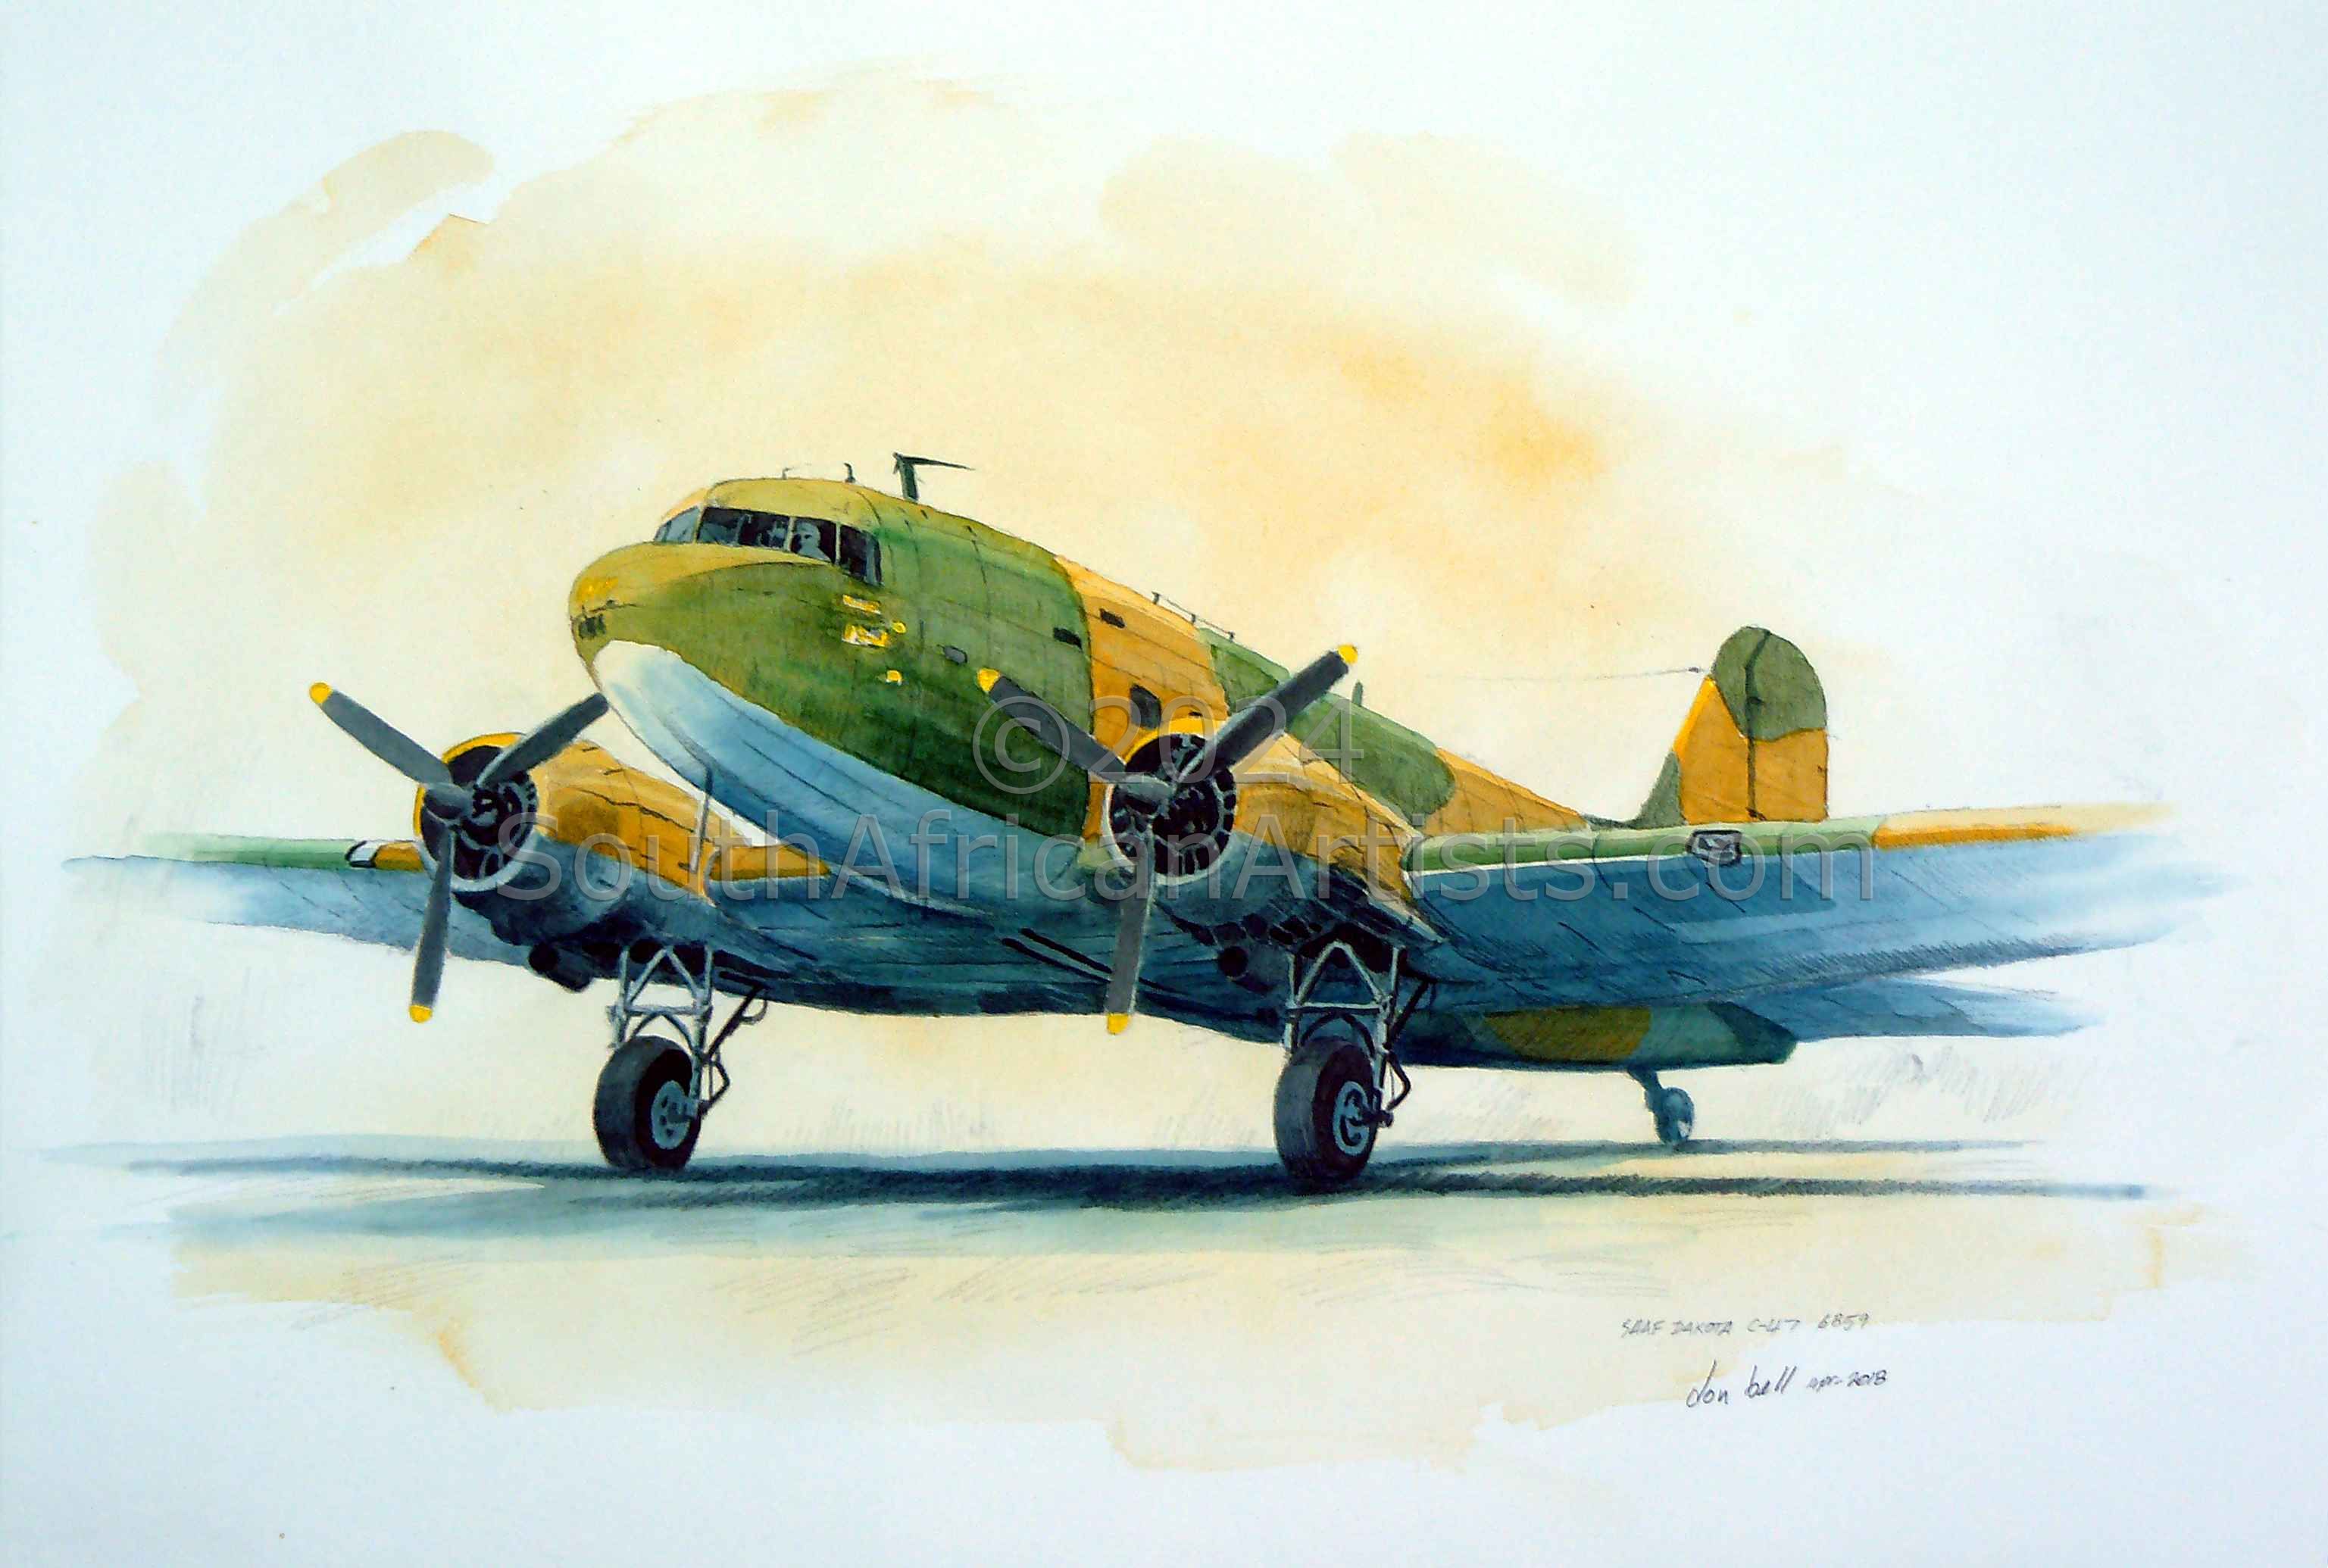 Saaf Douglas Dakota C-47 6869